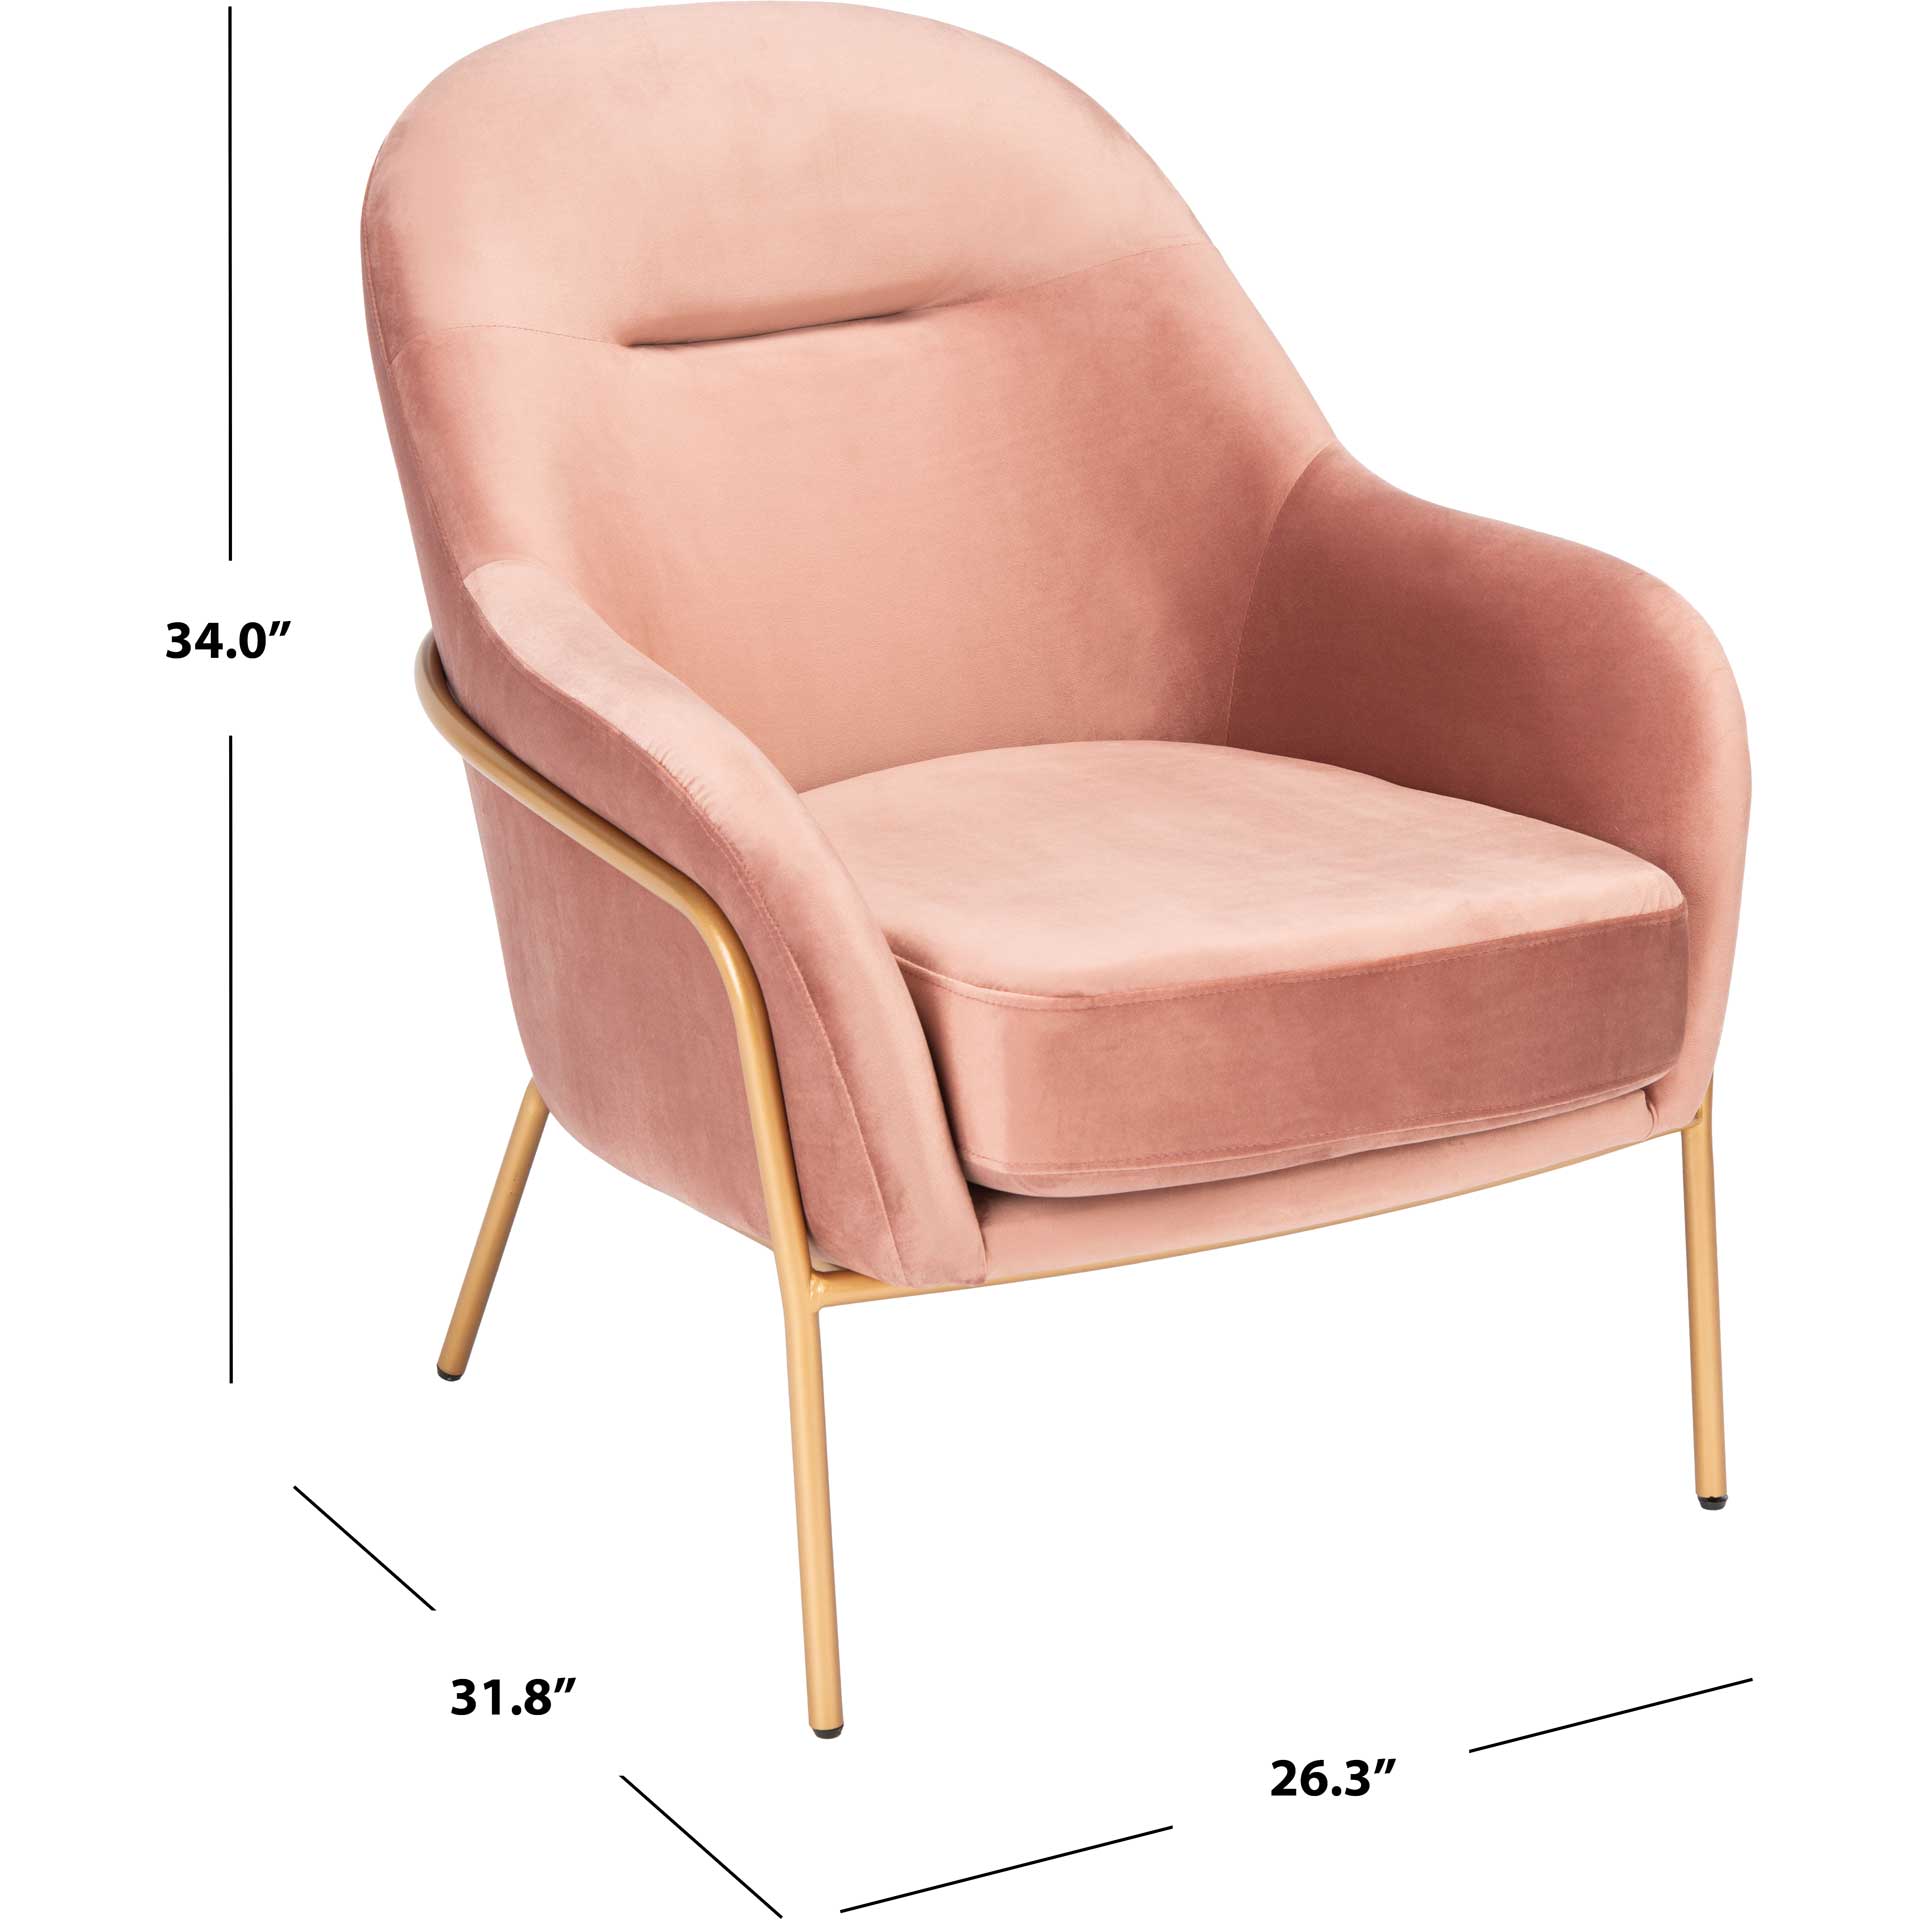 Eldon Velvet Accent Chair Dusty Rose/Gold